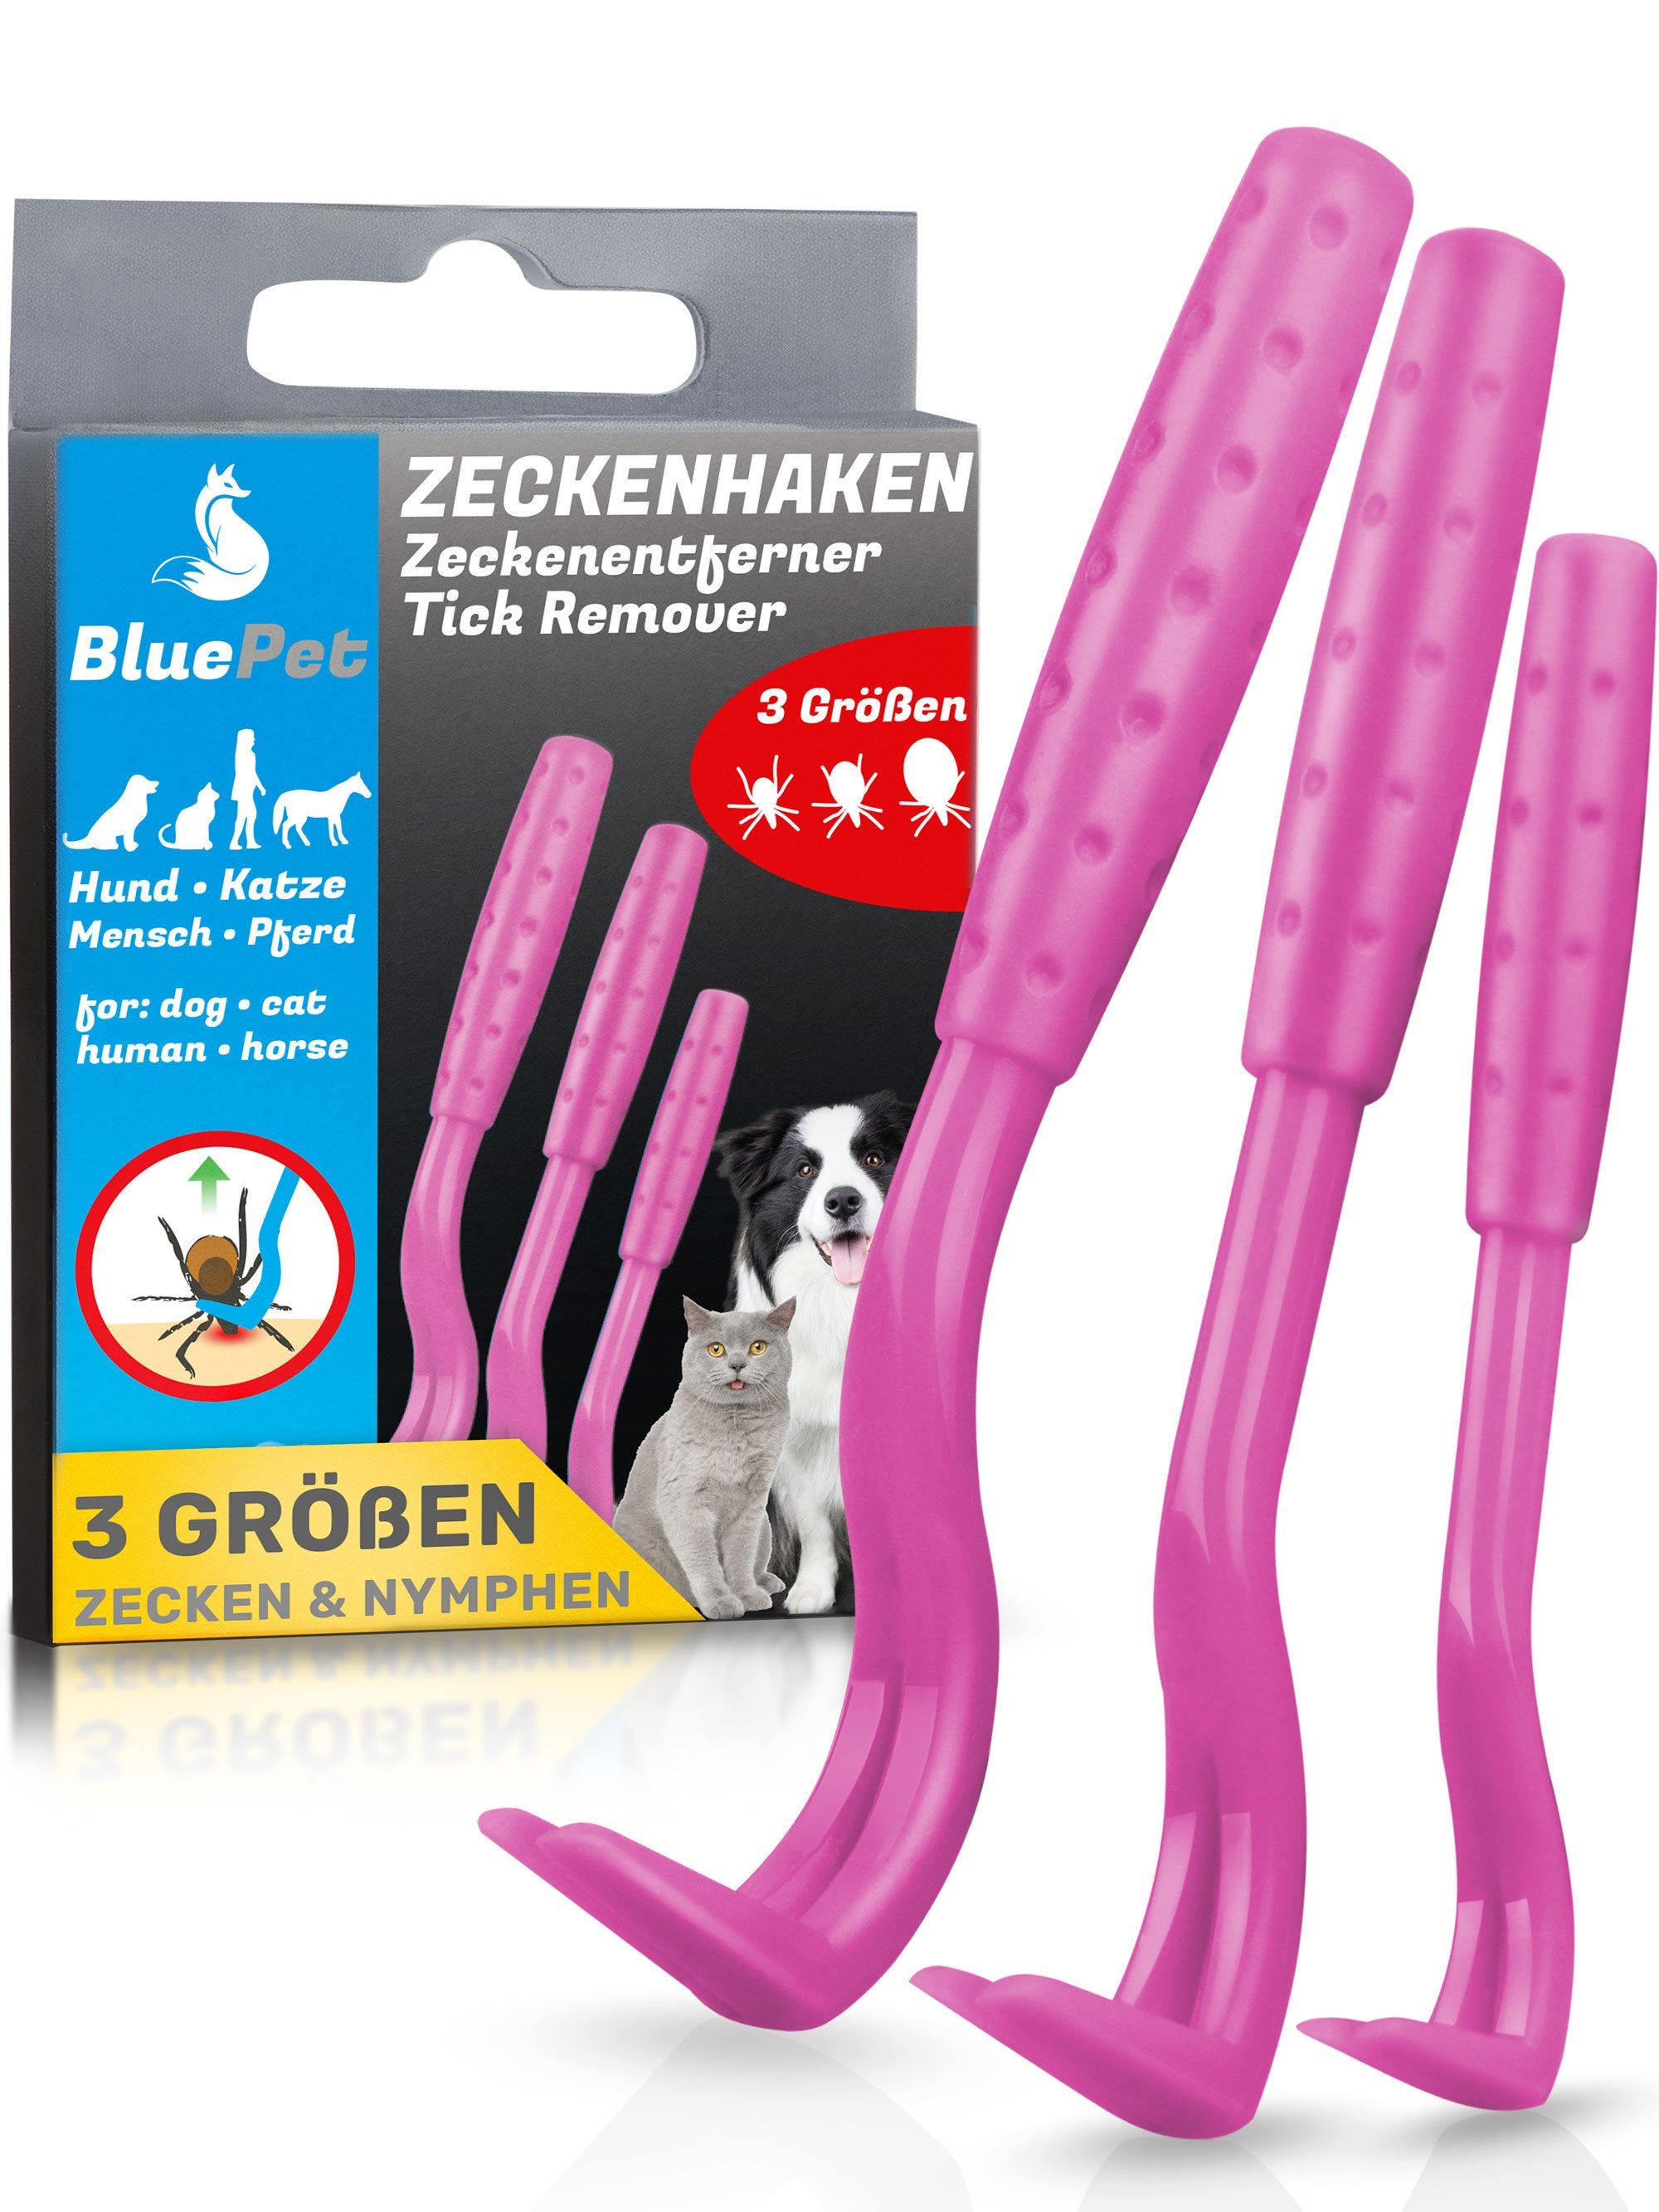 BluePet Zeckenpinzette "Tick-Trick" Zeckenhaken 3er für Menschen Rosa Set Tiere Zeckenentfernung und Zeckenentferner